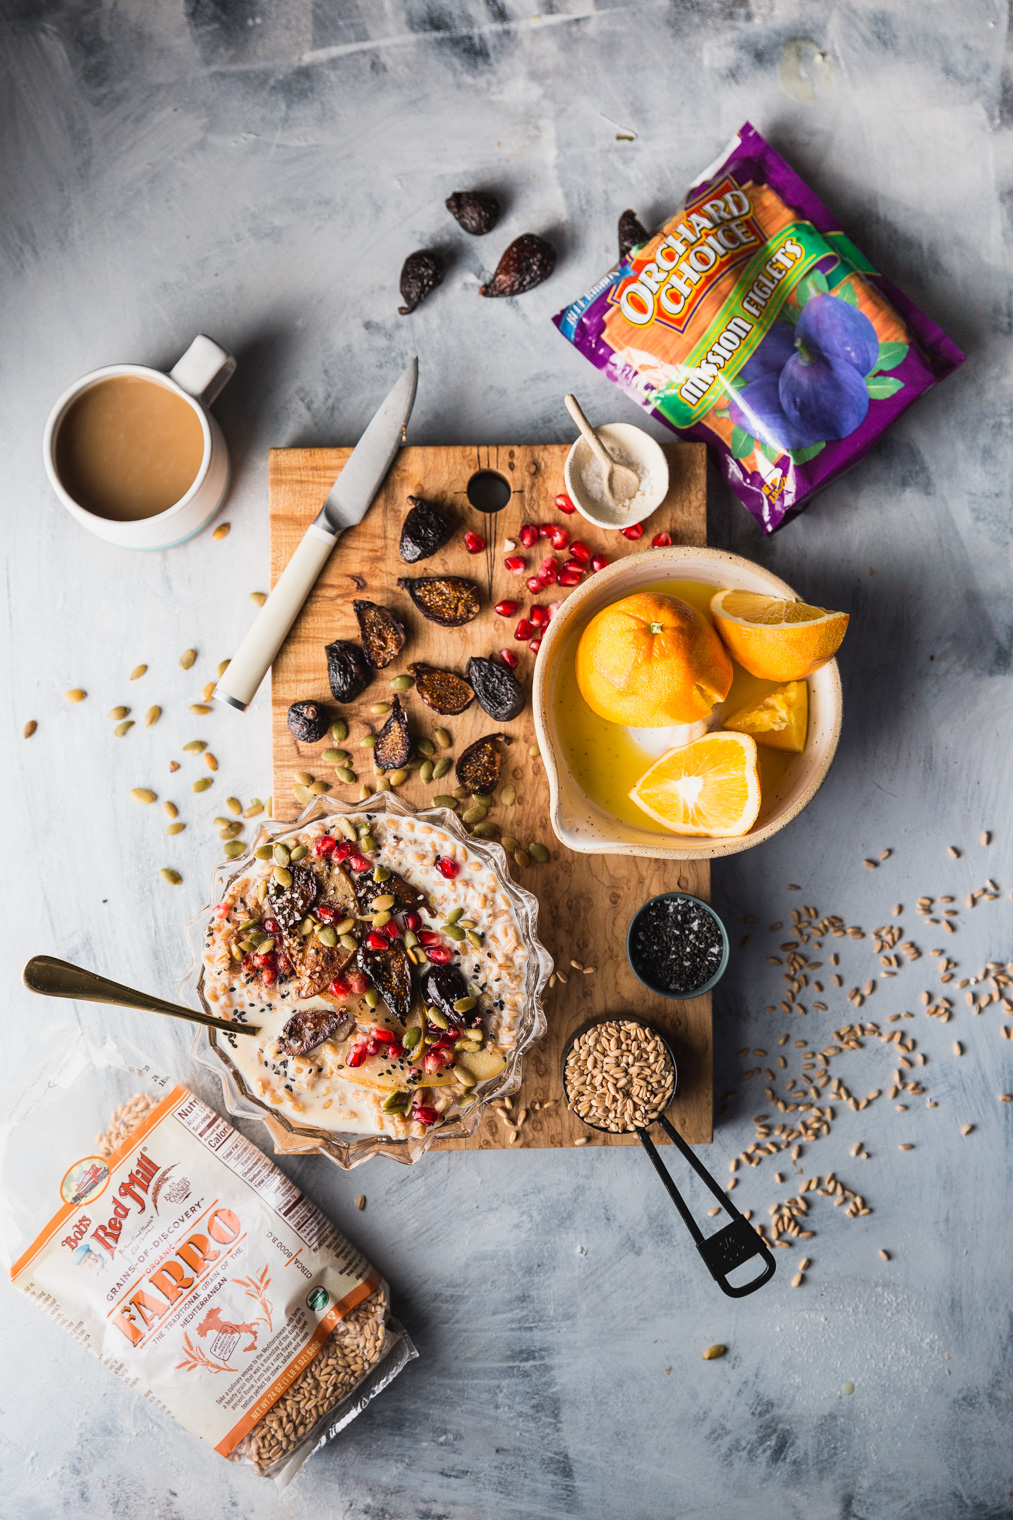 Seedy Farro Breakfast Bowl Recipe With Warmed Figs & Pears